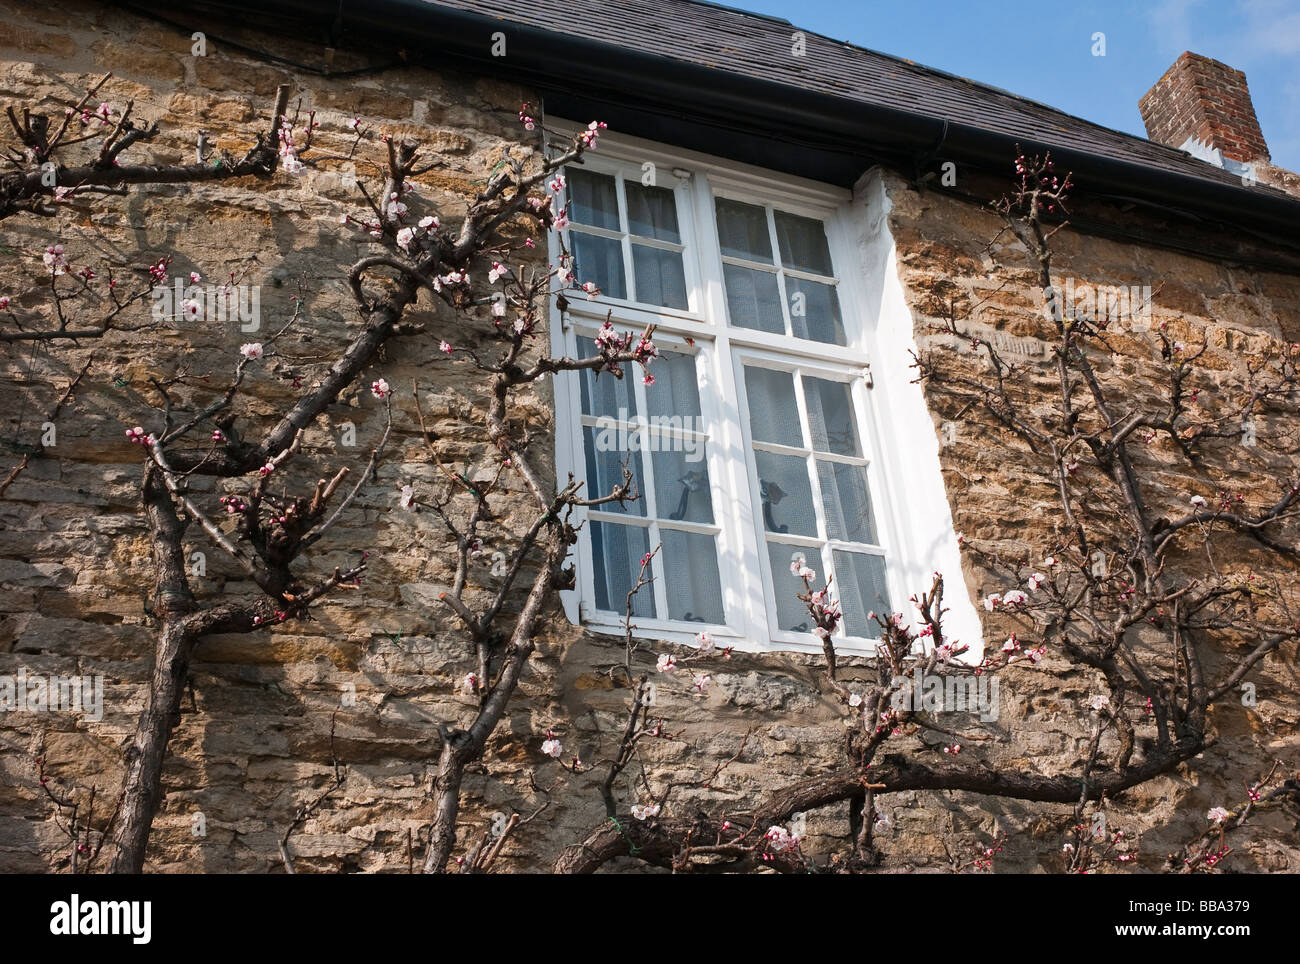 Premier sur les arbres fruitiers en fleurs abricot en grandissant dans les murs cottage Aynho Northamptonshire UK Banque D'Images